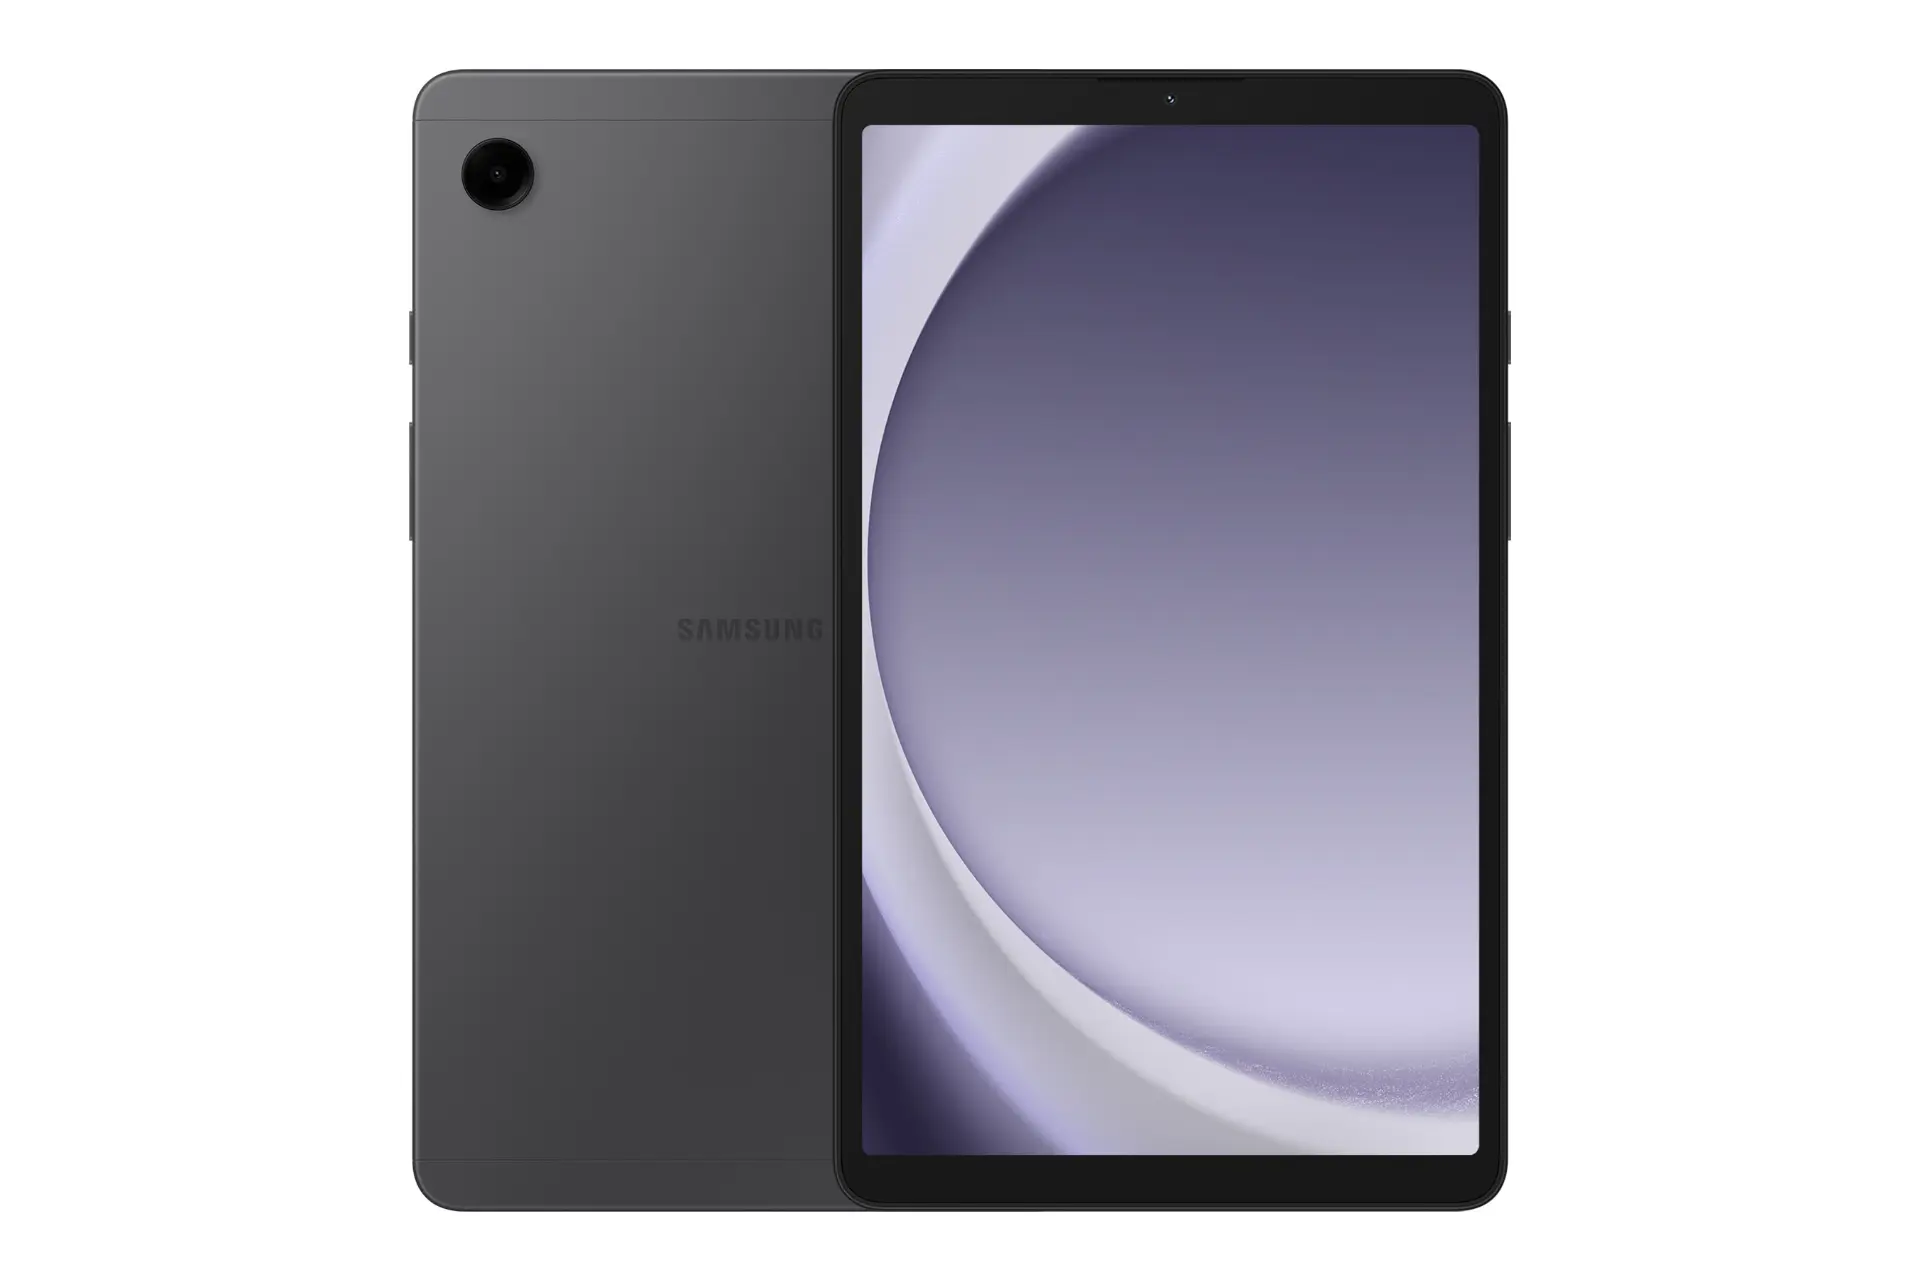 مرجع متخصصين ايران نماي كلي تبلت گلكسي تب A9 سامسونگ / Samsung Galaxy Tab A9 با نمايشگر روشن و نمايش لوگو و دوربين پنل پشت رنگ خاكستري